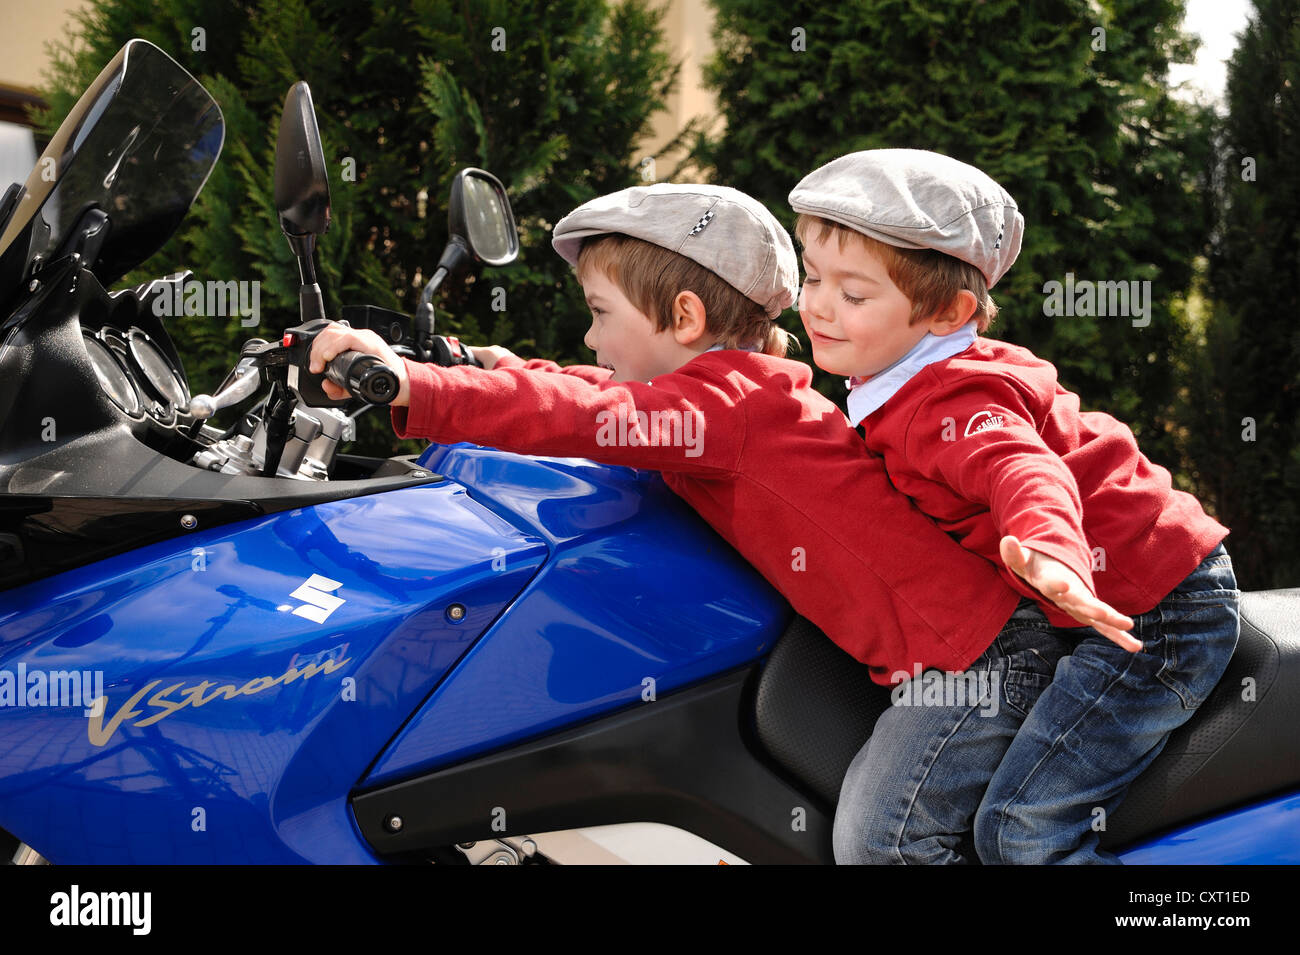 Gemelos, 4, usando tapones planos mientras están sentados juntos en una motocicleta azul Foto de stock